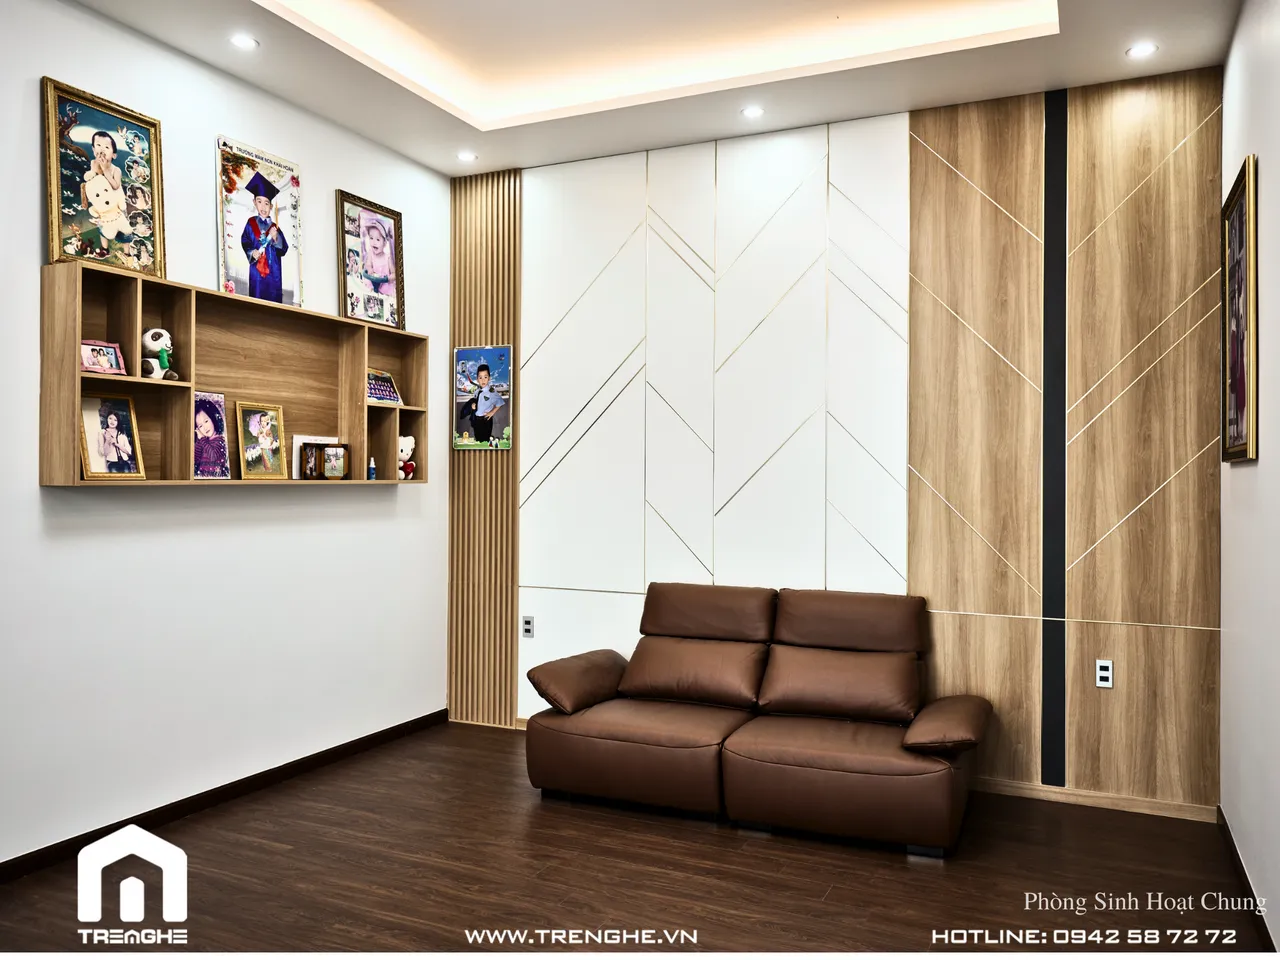 Hoàn thiện nội thất phòng sinh hoạt chung biệt thự Hòa Long 302m2 phong cách Hiện đại Modern